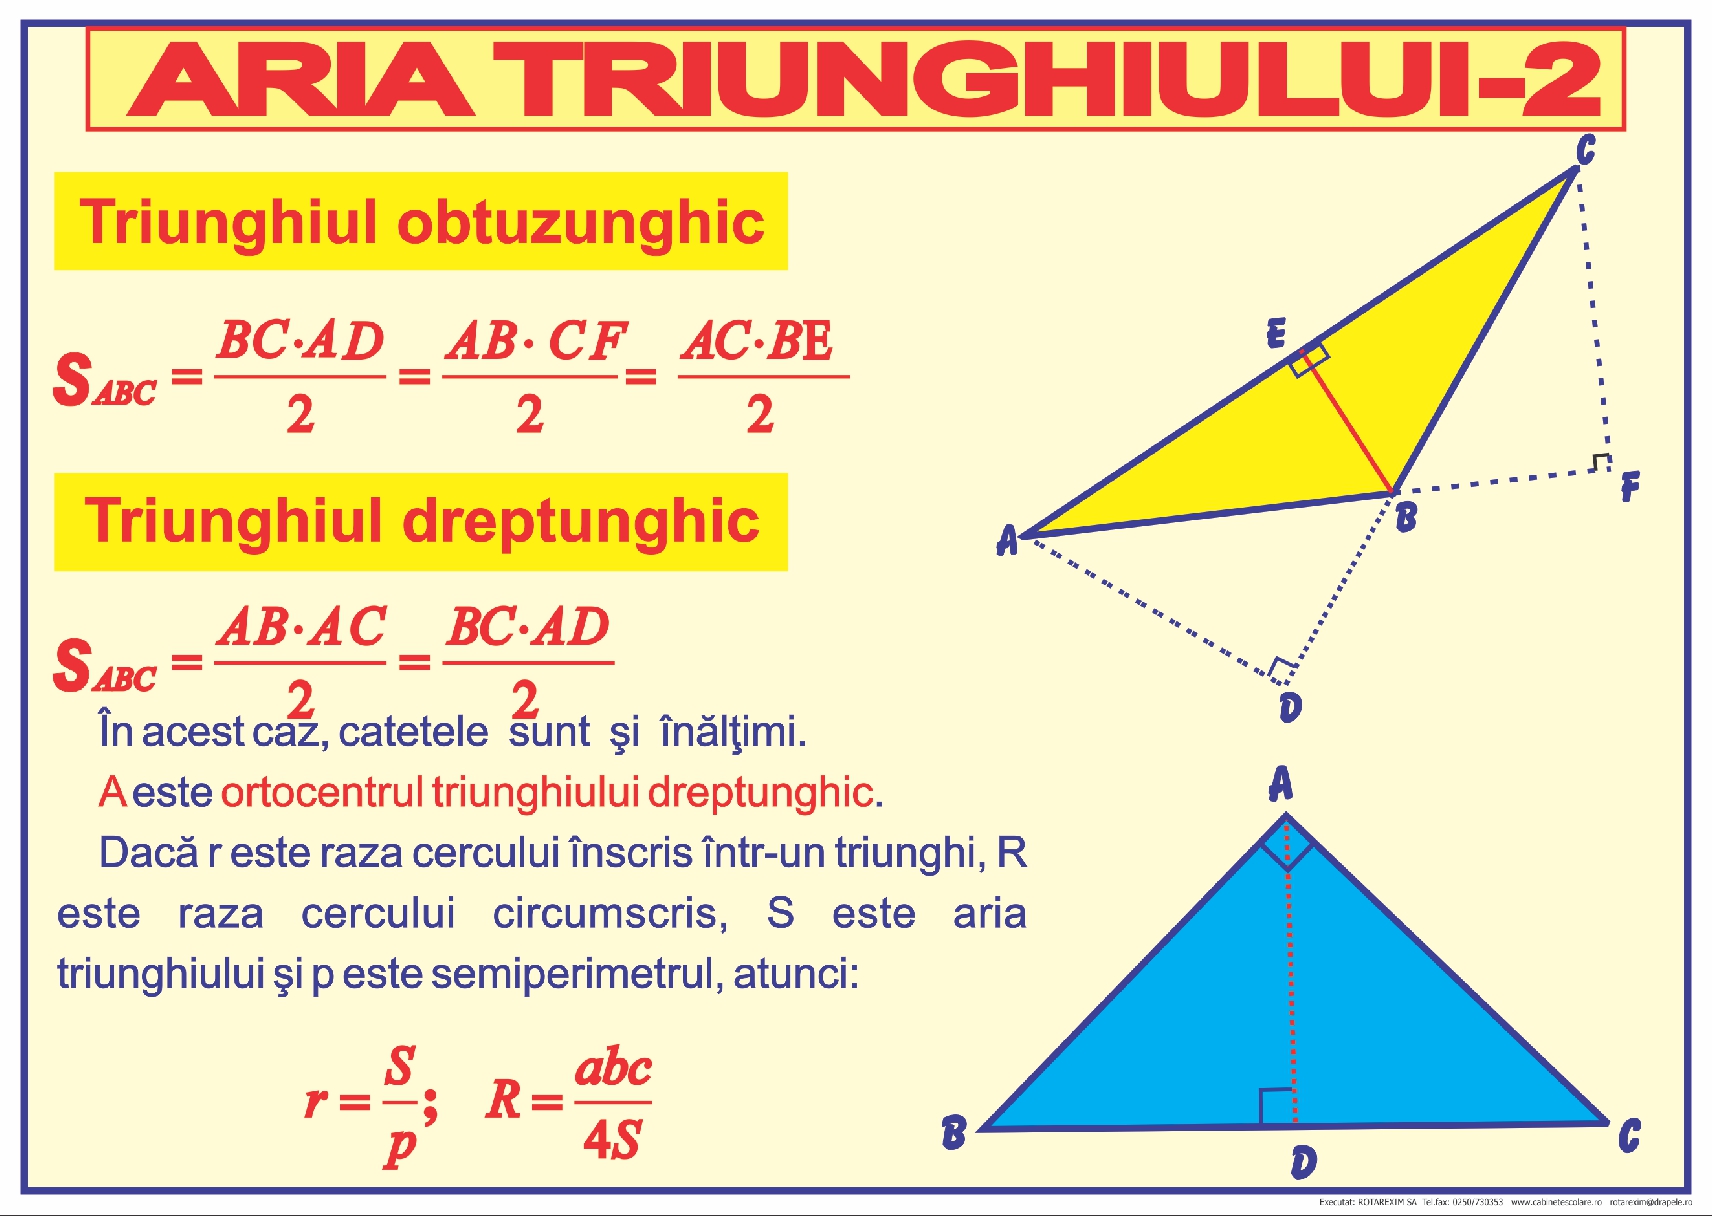 Aria triunghiului - 2